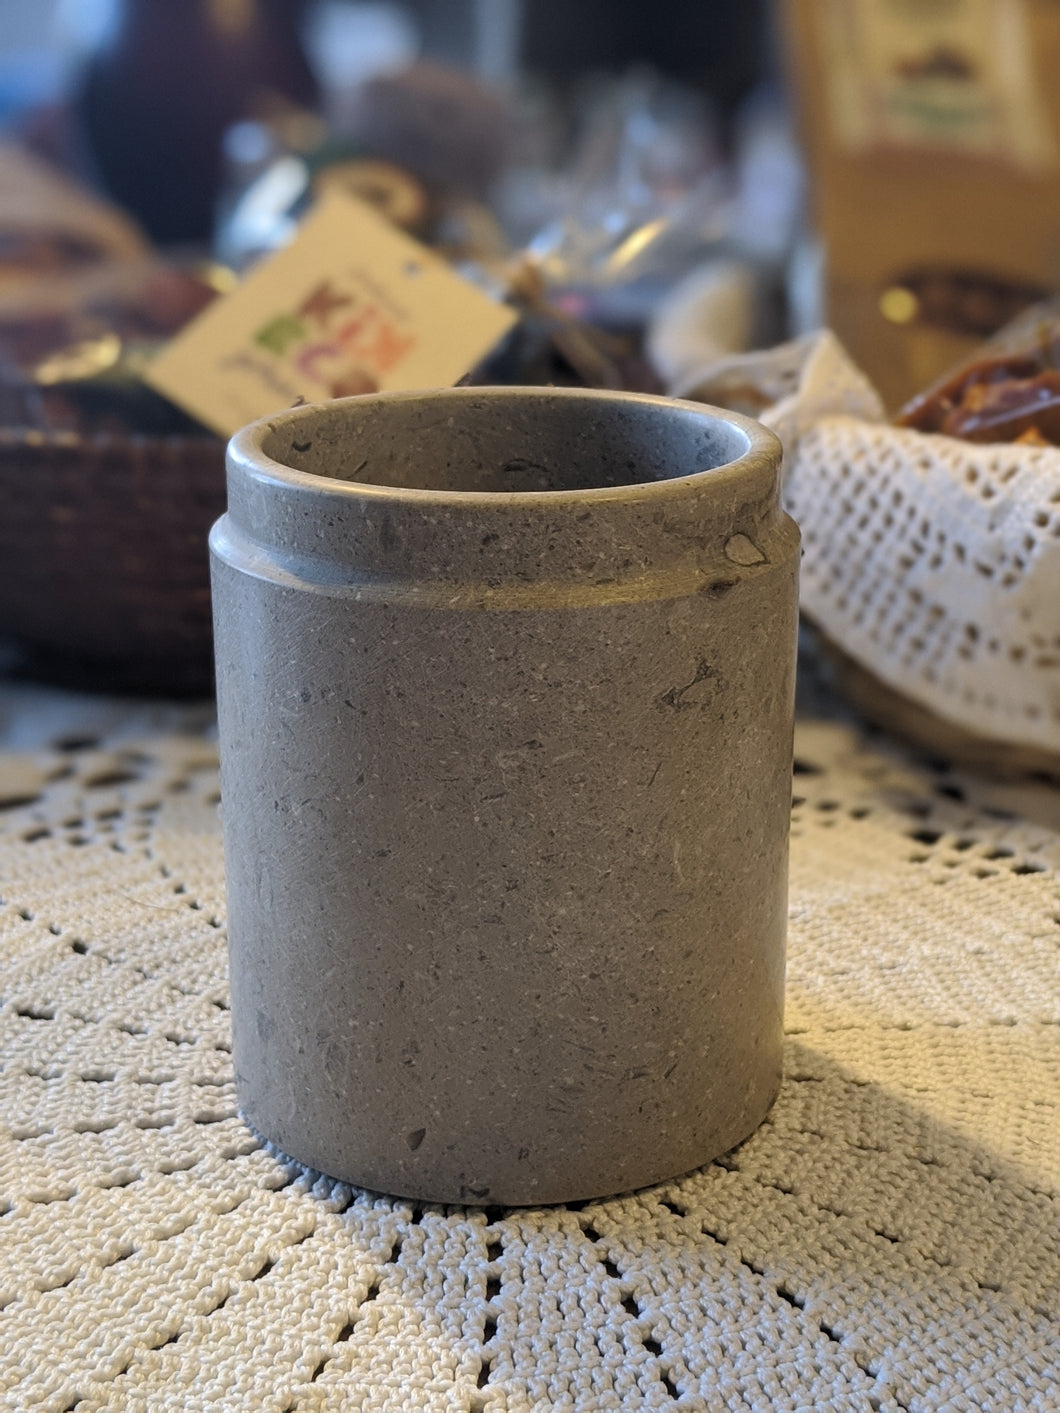 A stone pot